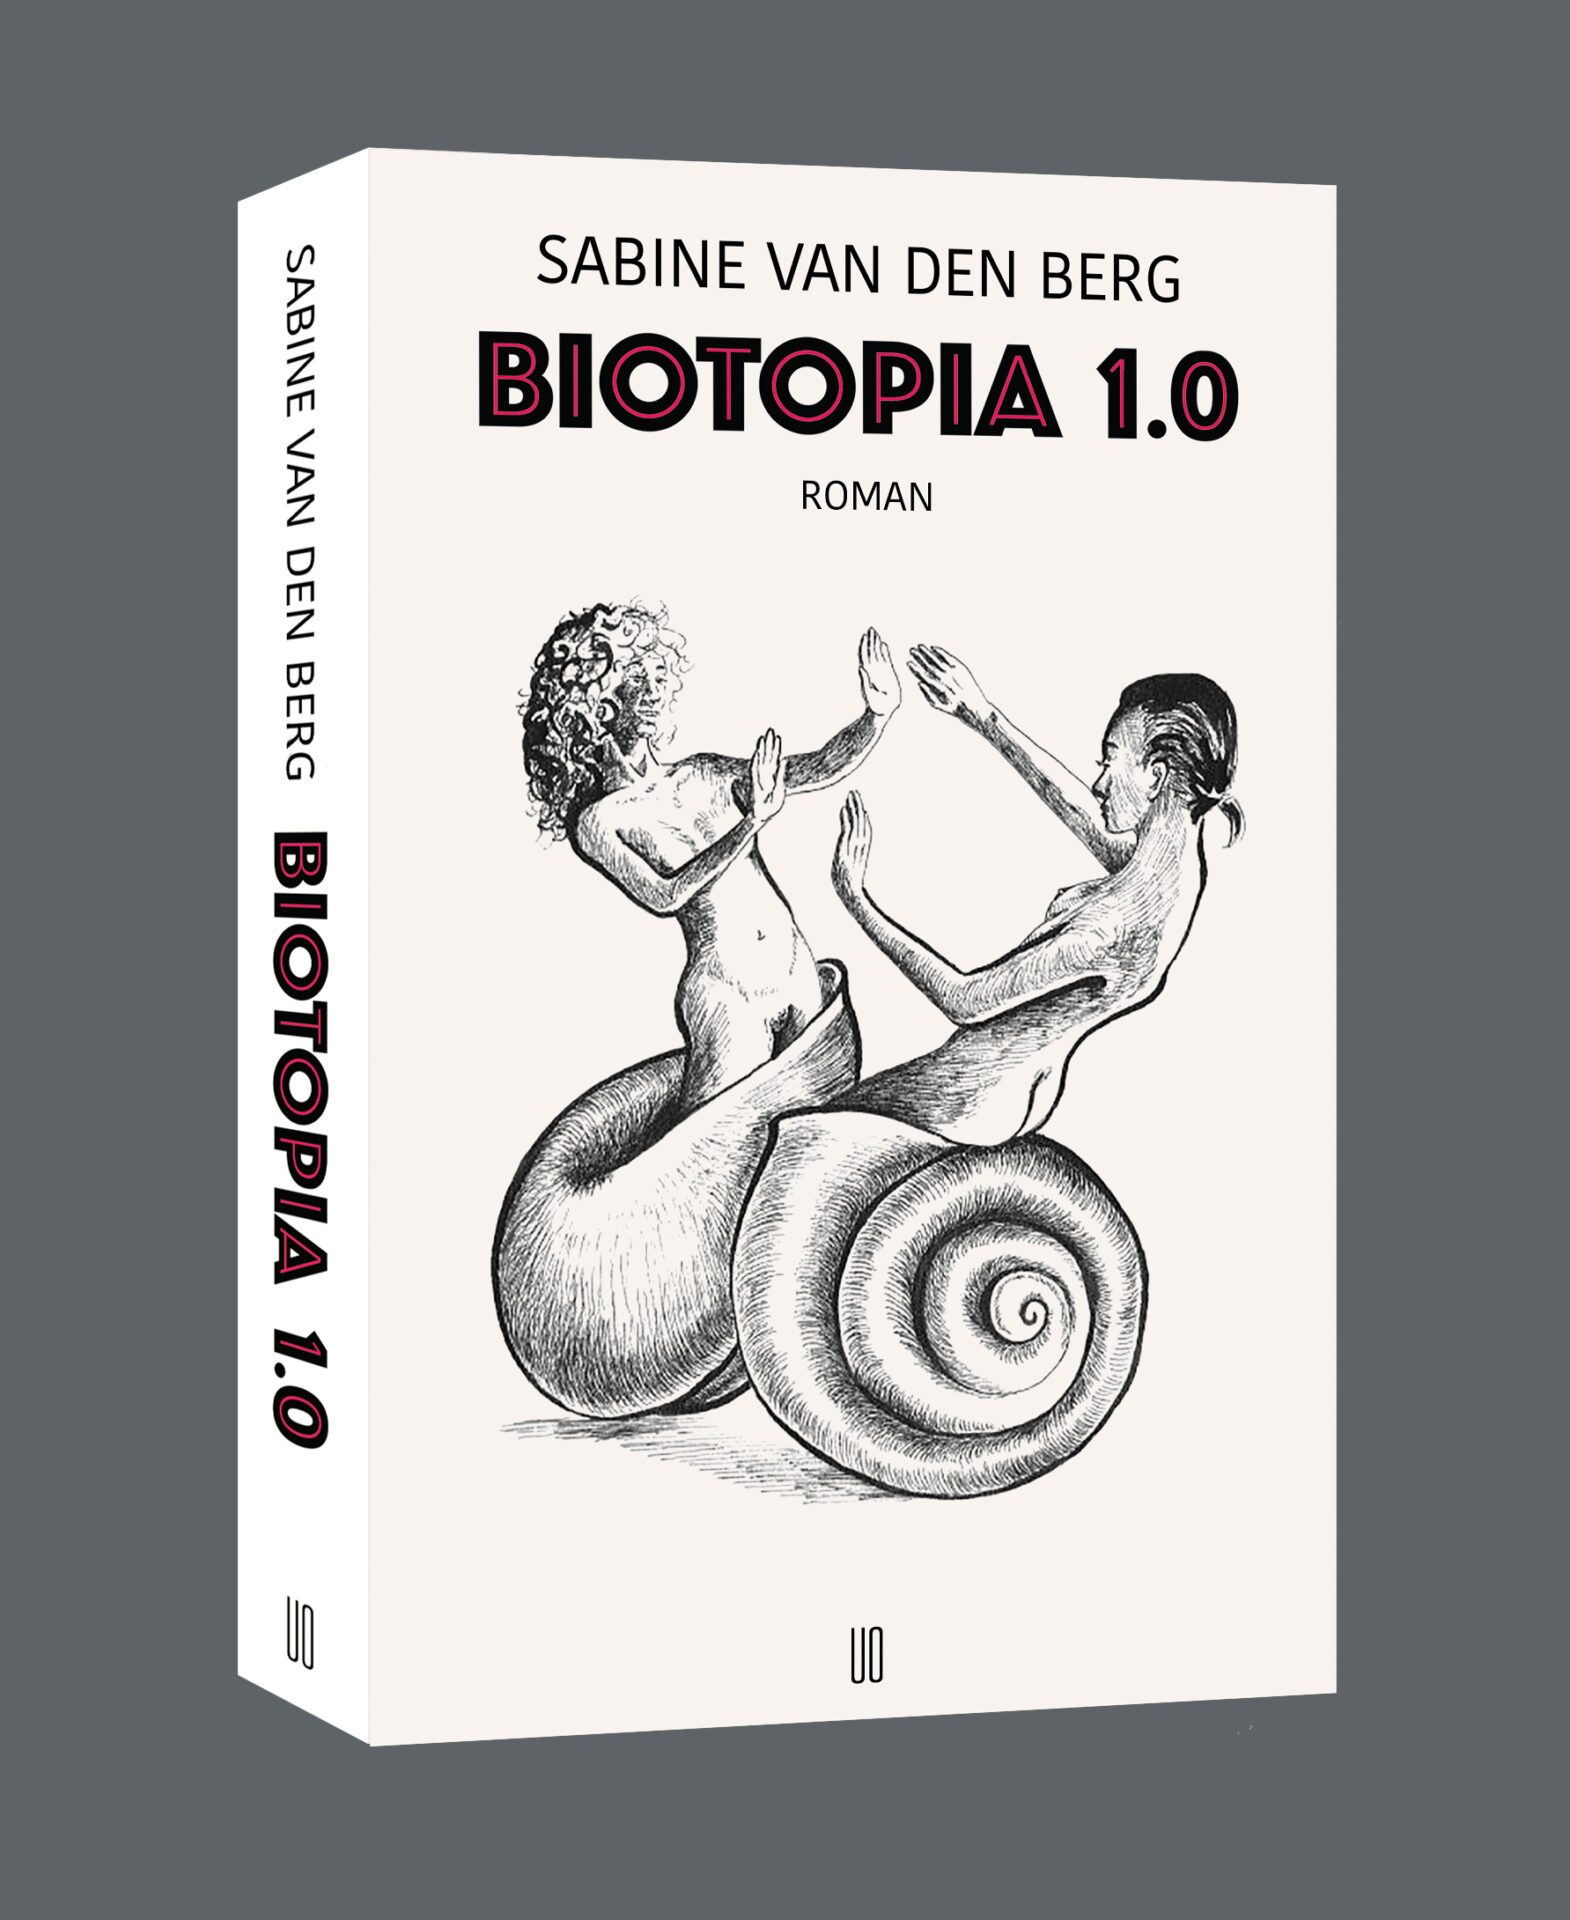 Sabine van den Berg Biotopia 1.0